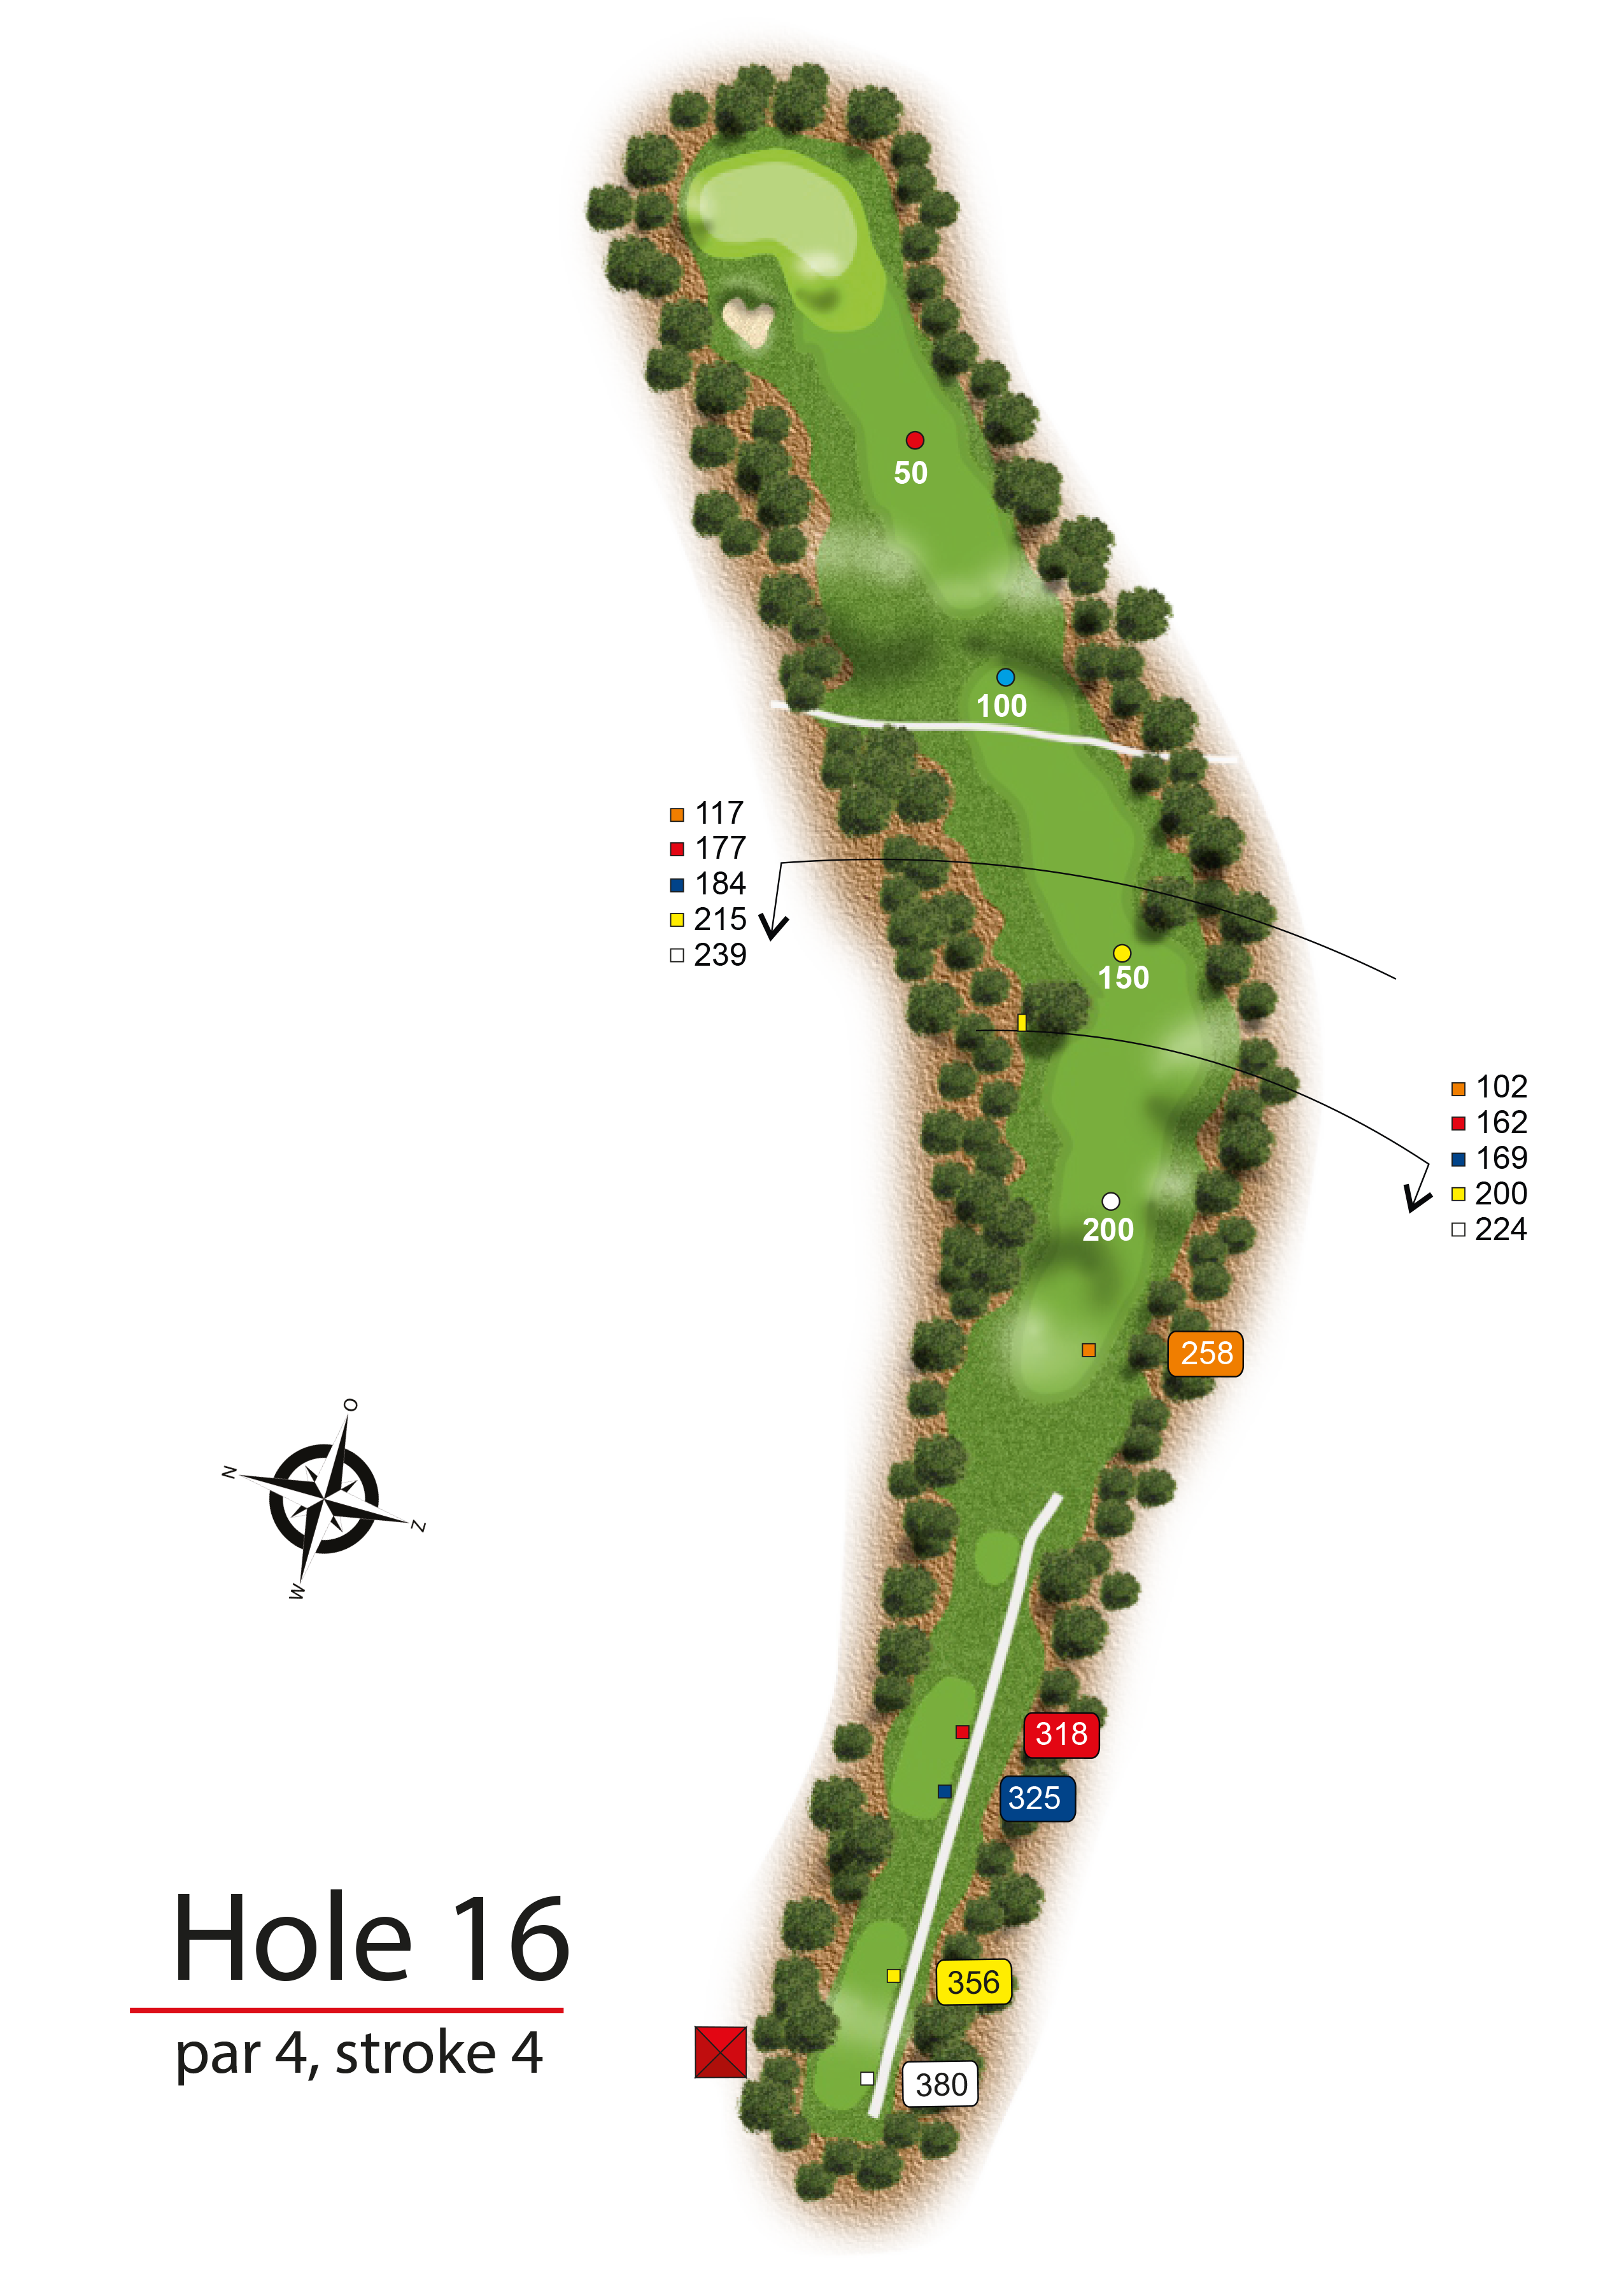 Hole 16 - simple